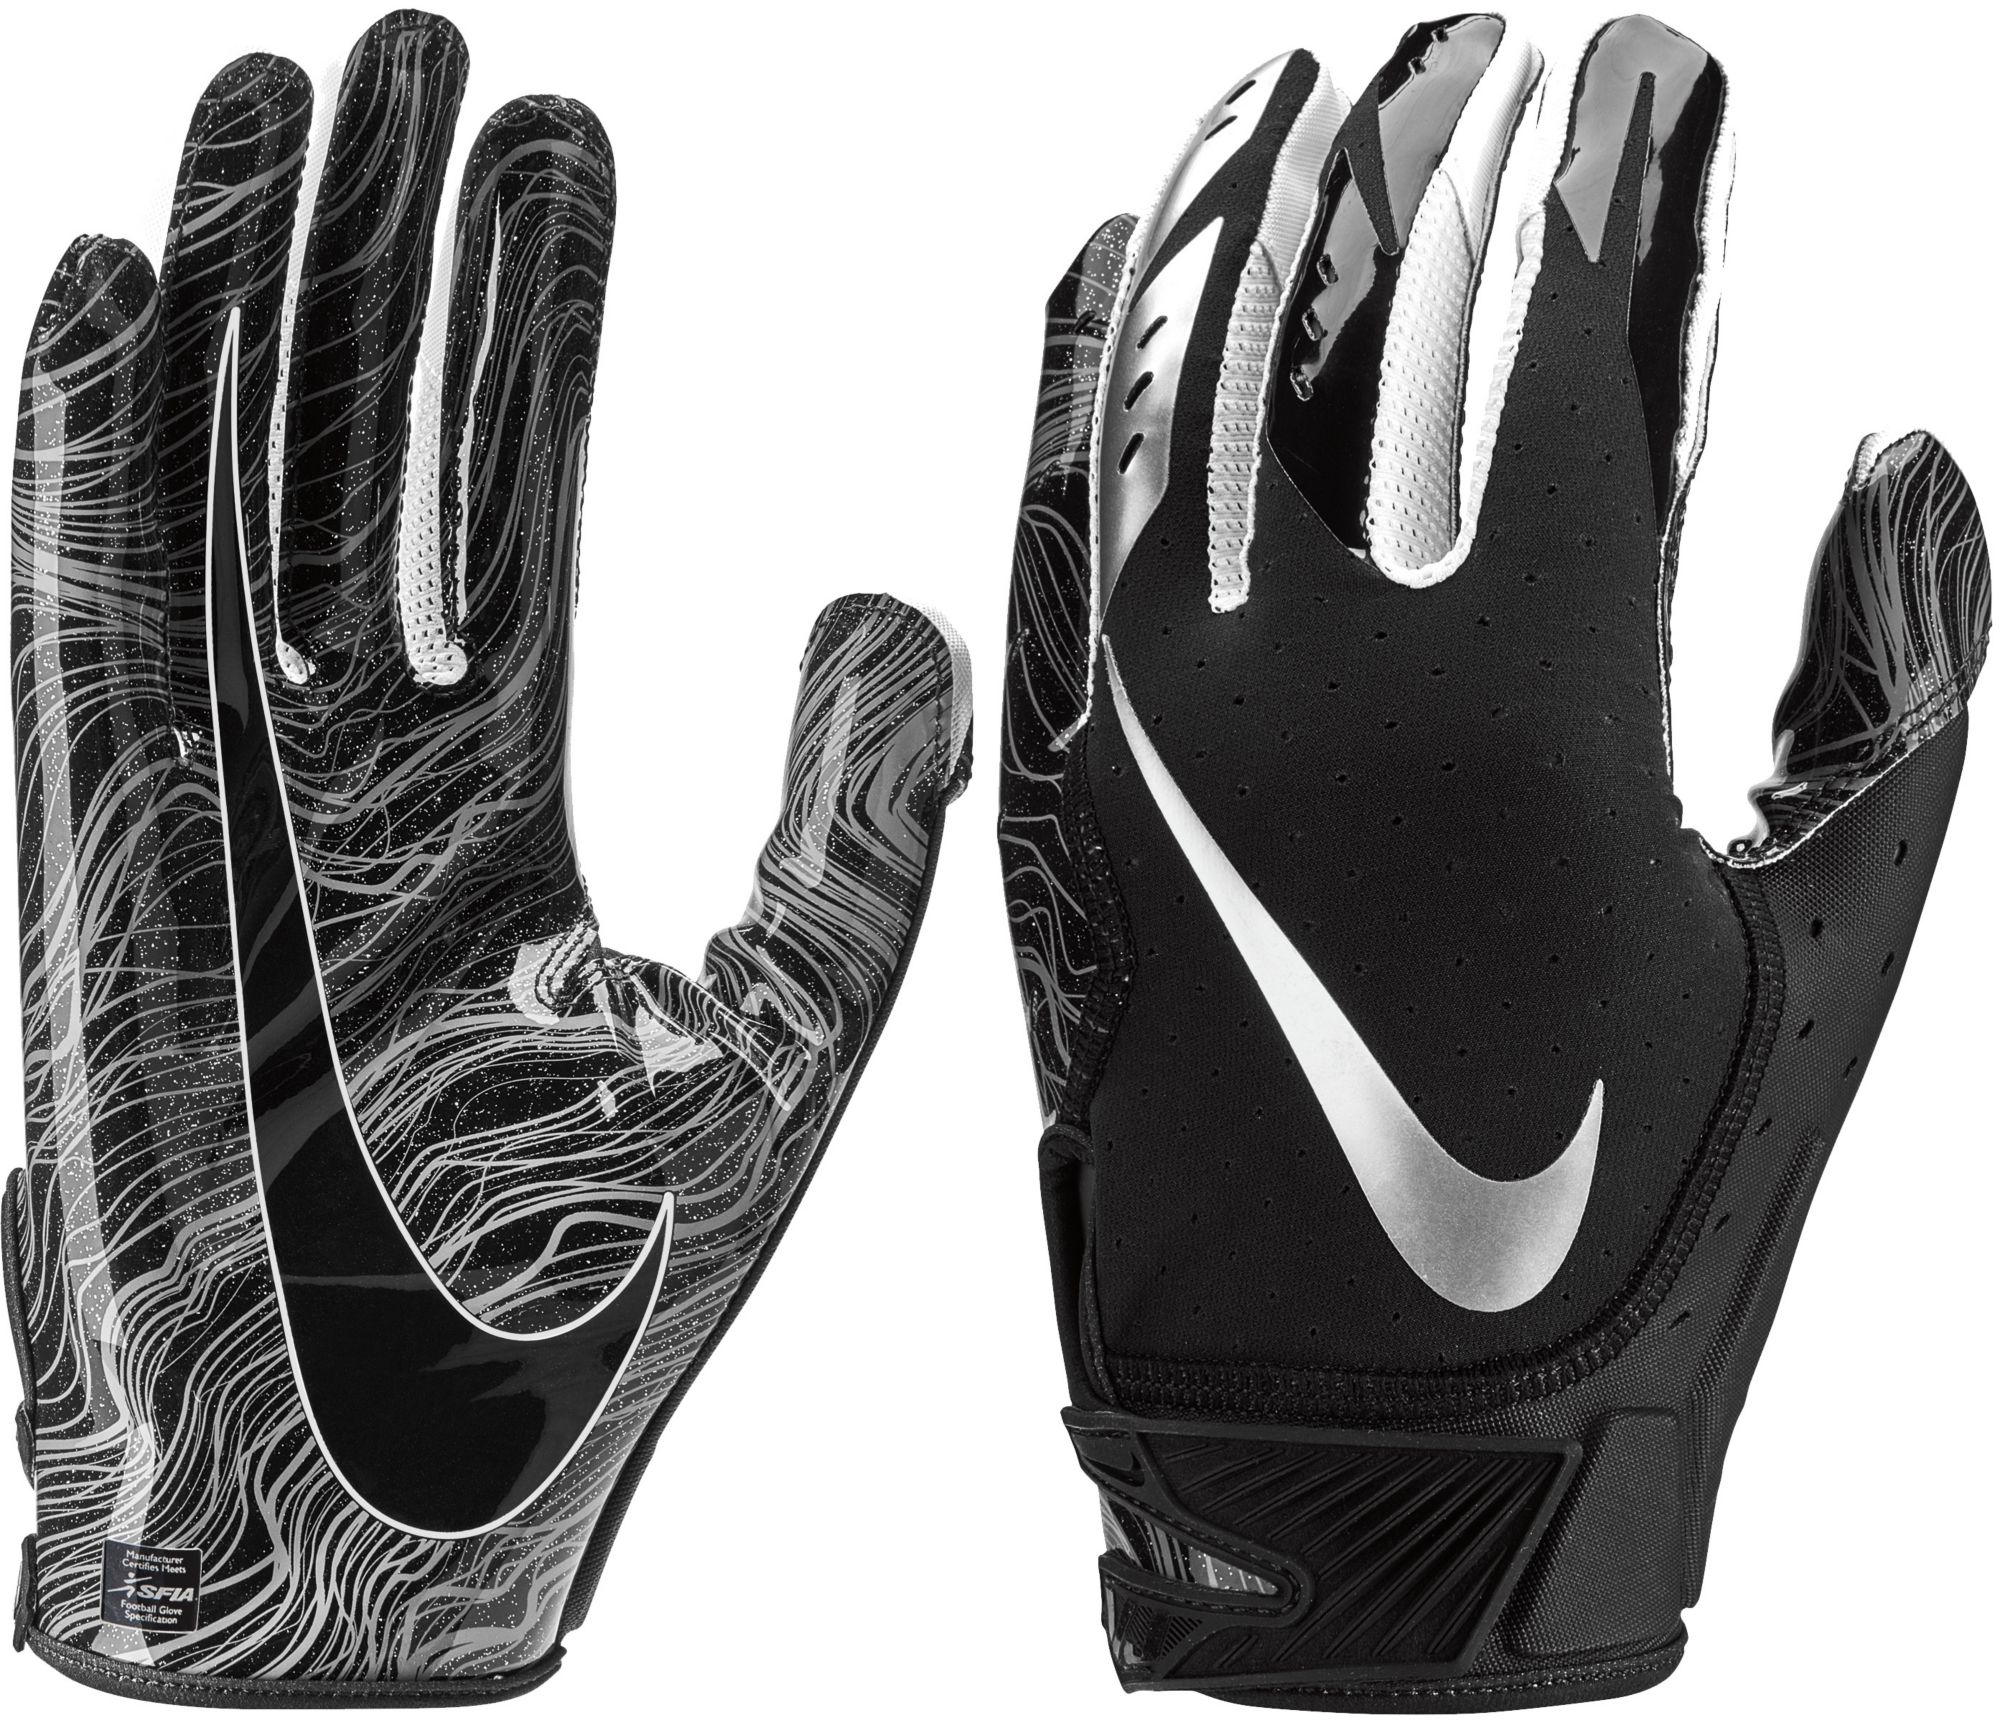 vapor jet 5.0 gloves